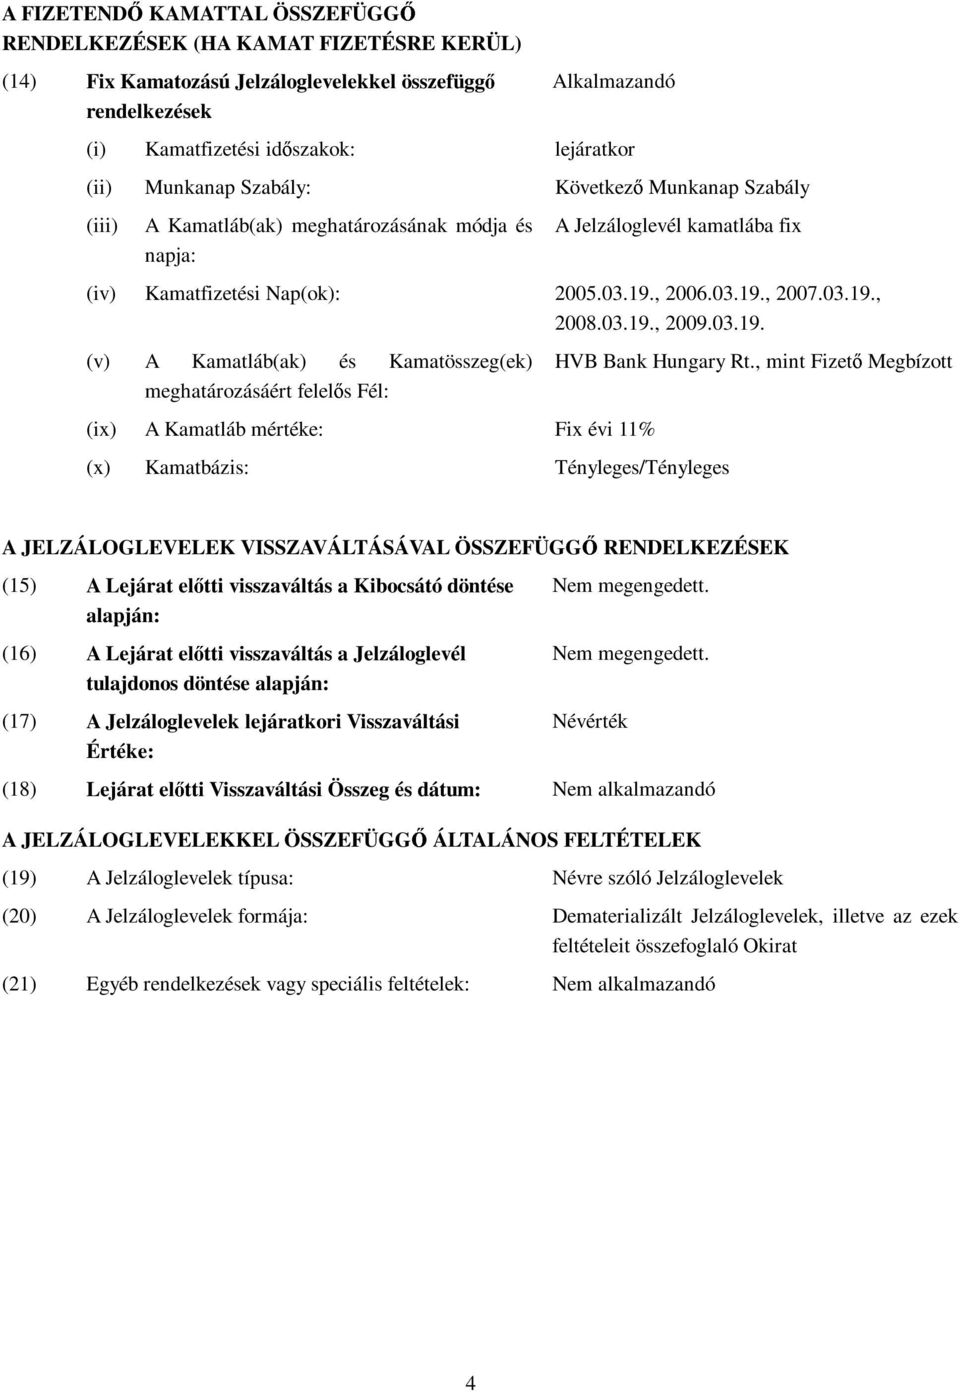 03.19., 2009.03.19. (v) A Kamatláb(ak) és Kamatösszeg(ek) meghatározásáért felelős Fél: (ix) A Kamatláb mértéke: Fix évi 11% (x) Kamatbázis: Tényleges/Tényleges HVB Bank Hungary Rt.